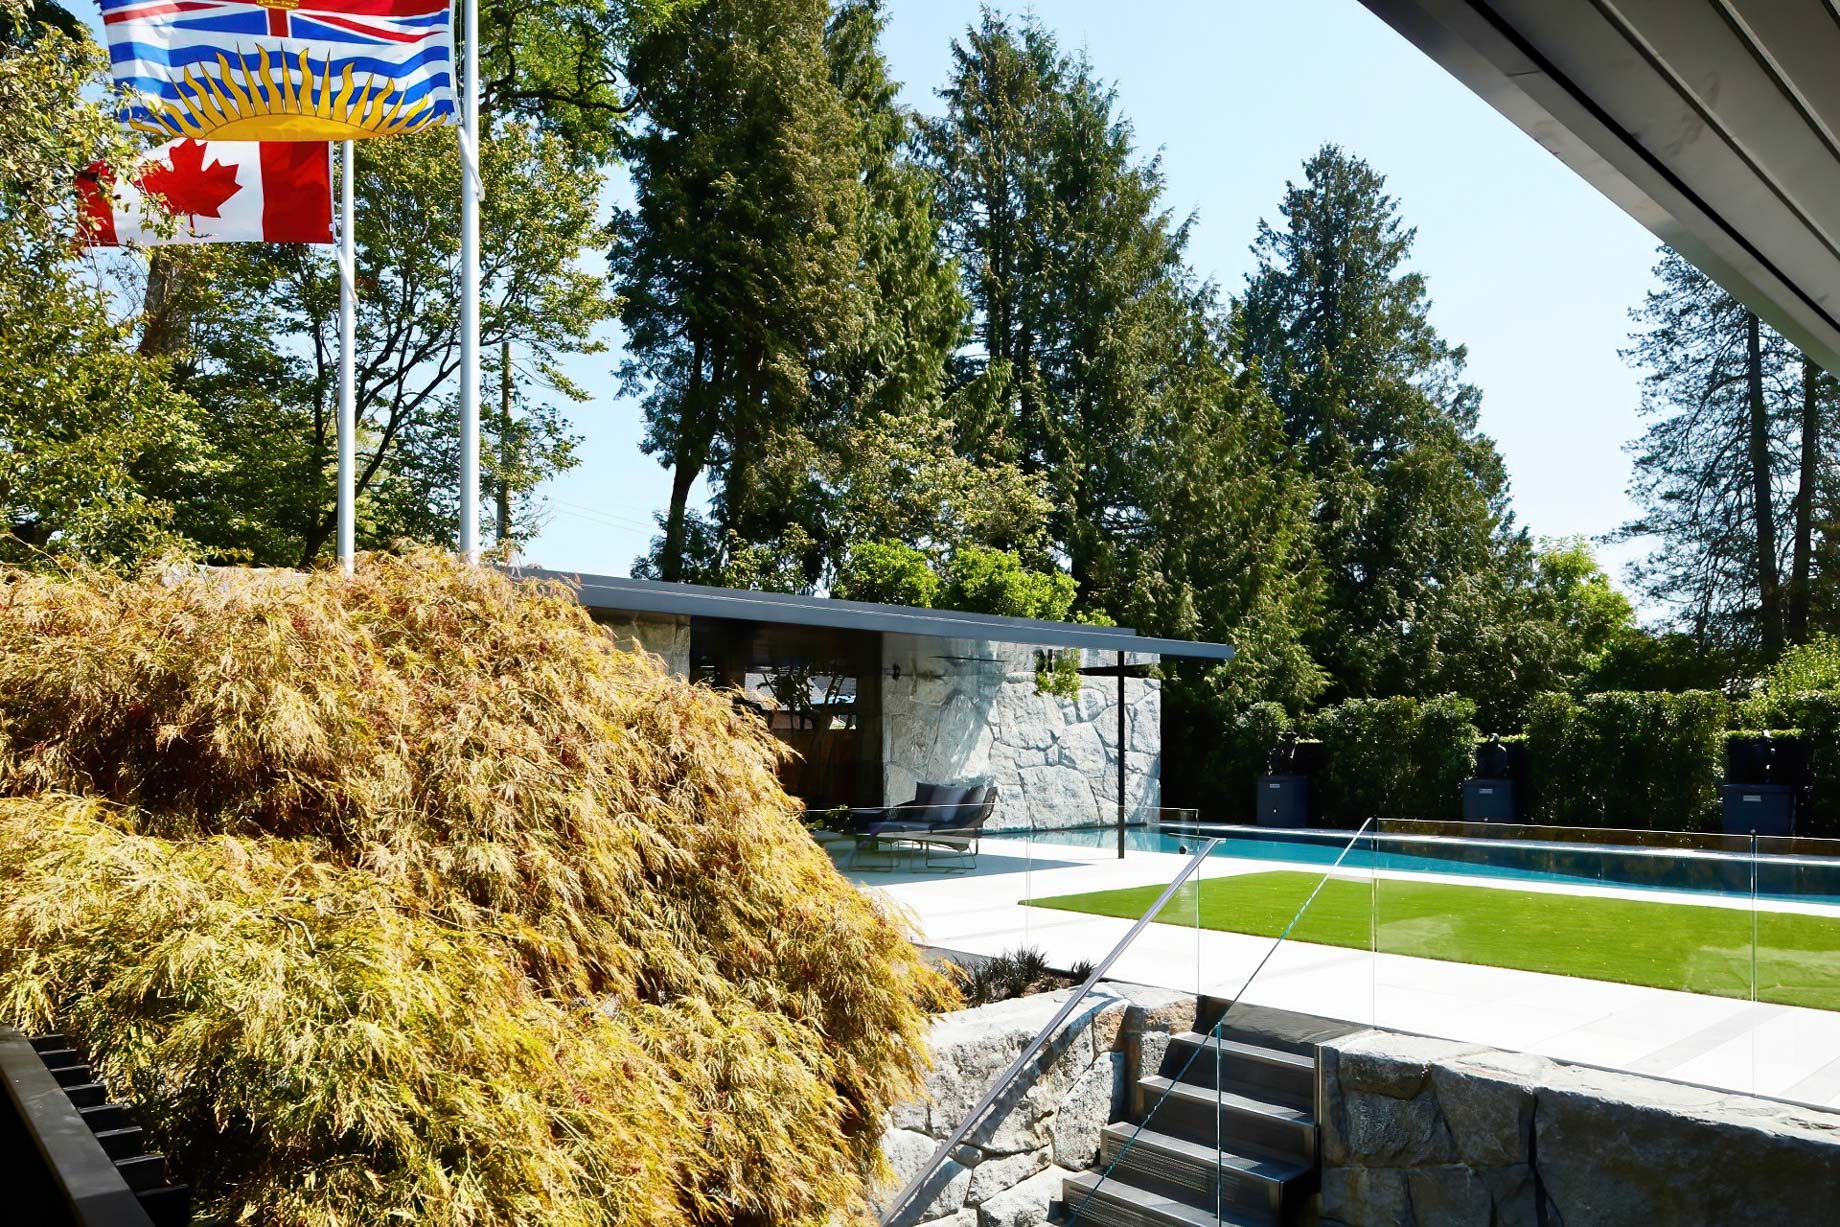 Sculpture Garden Gallery House Estate – Vancouver, BC, Canada